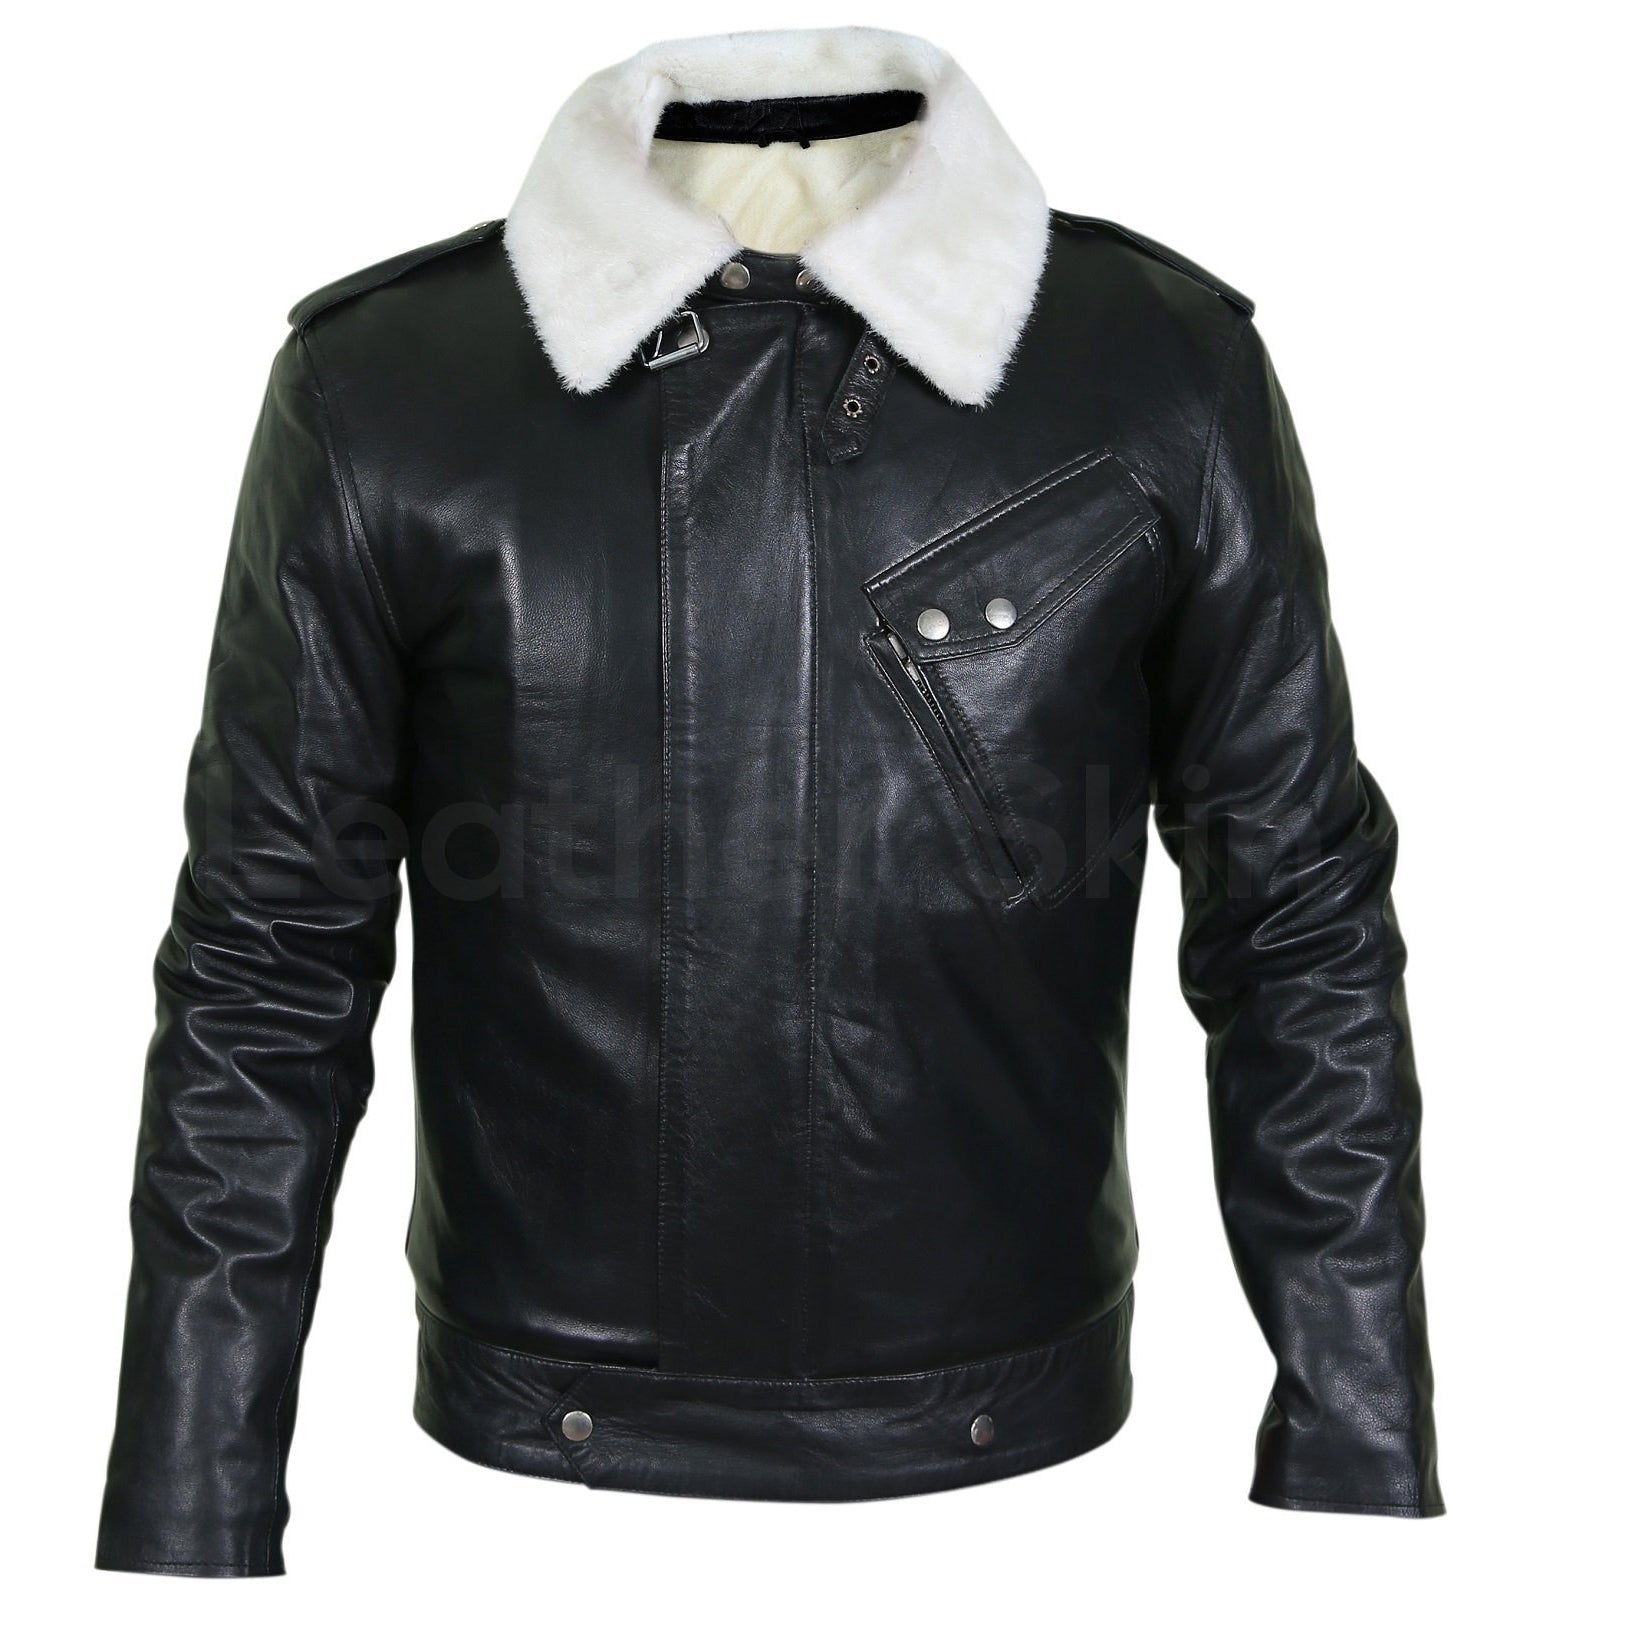 Men's Leather Jackets  Real Men Jacket For Sale